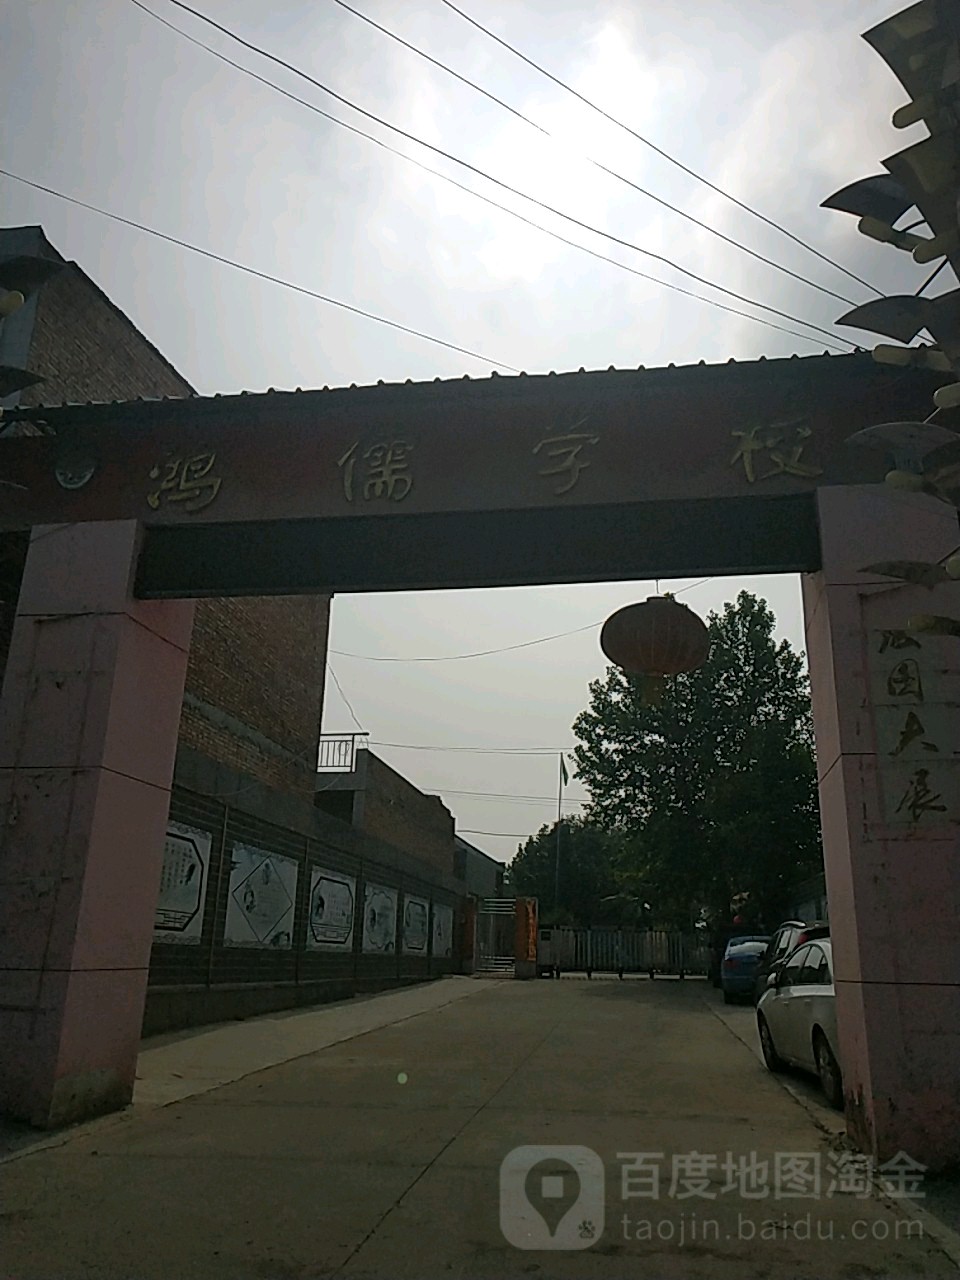 渭南市临渭区卢王村5组